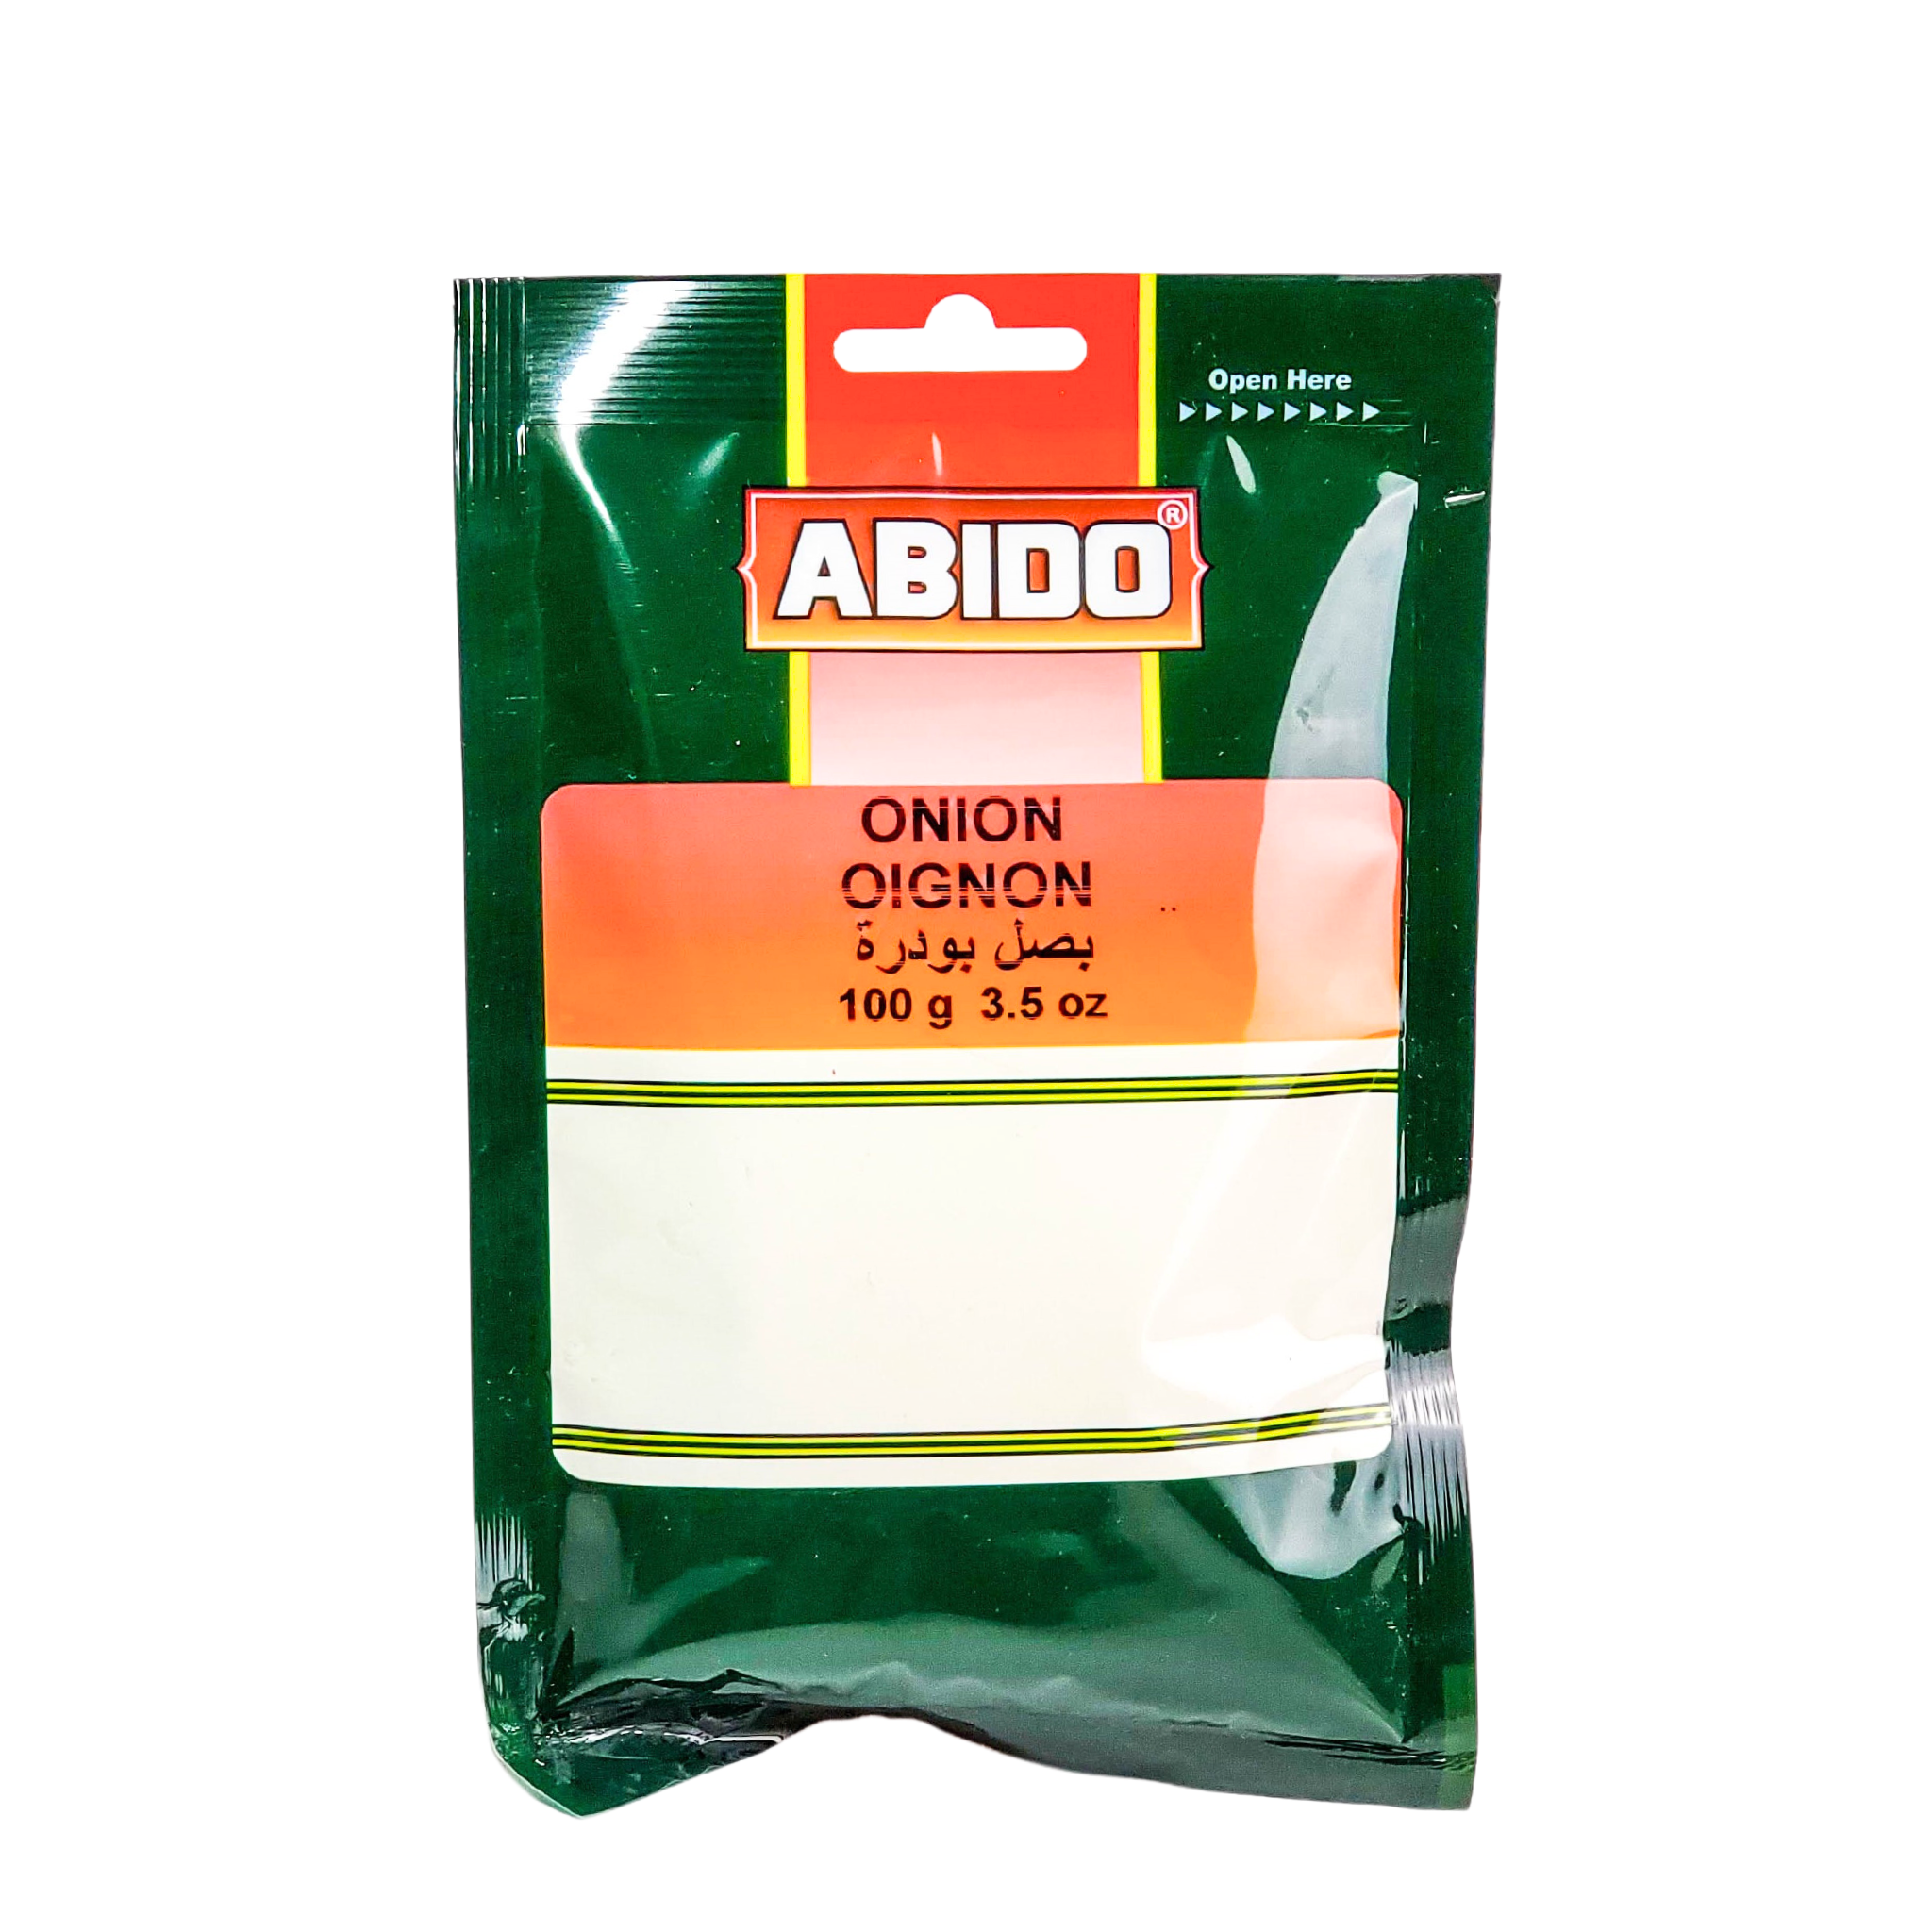 Abido Onion Powder 100g